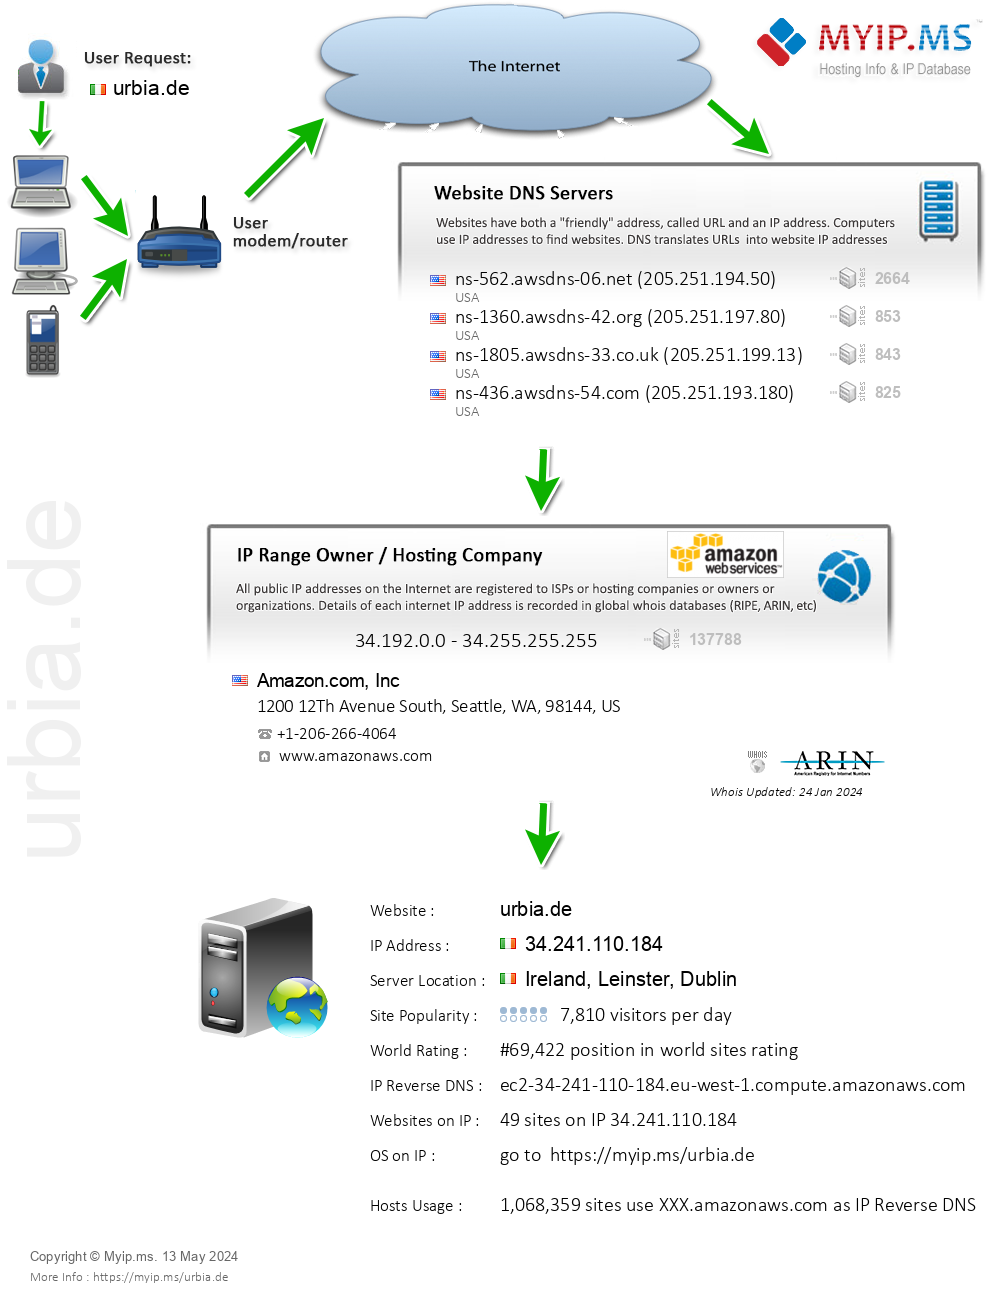 Urbia.de - Website Hosting Visual IP Diagram